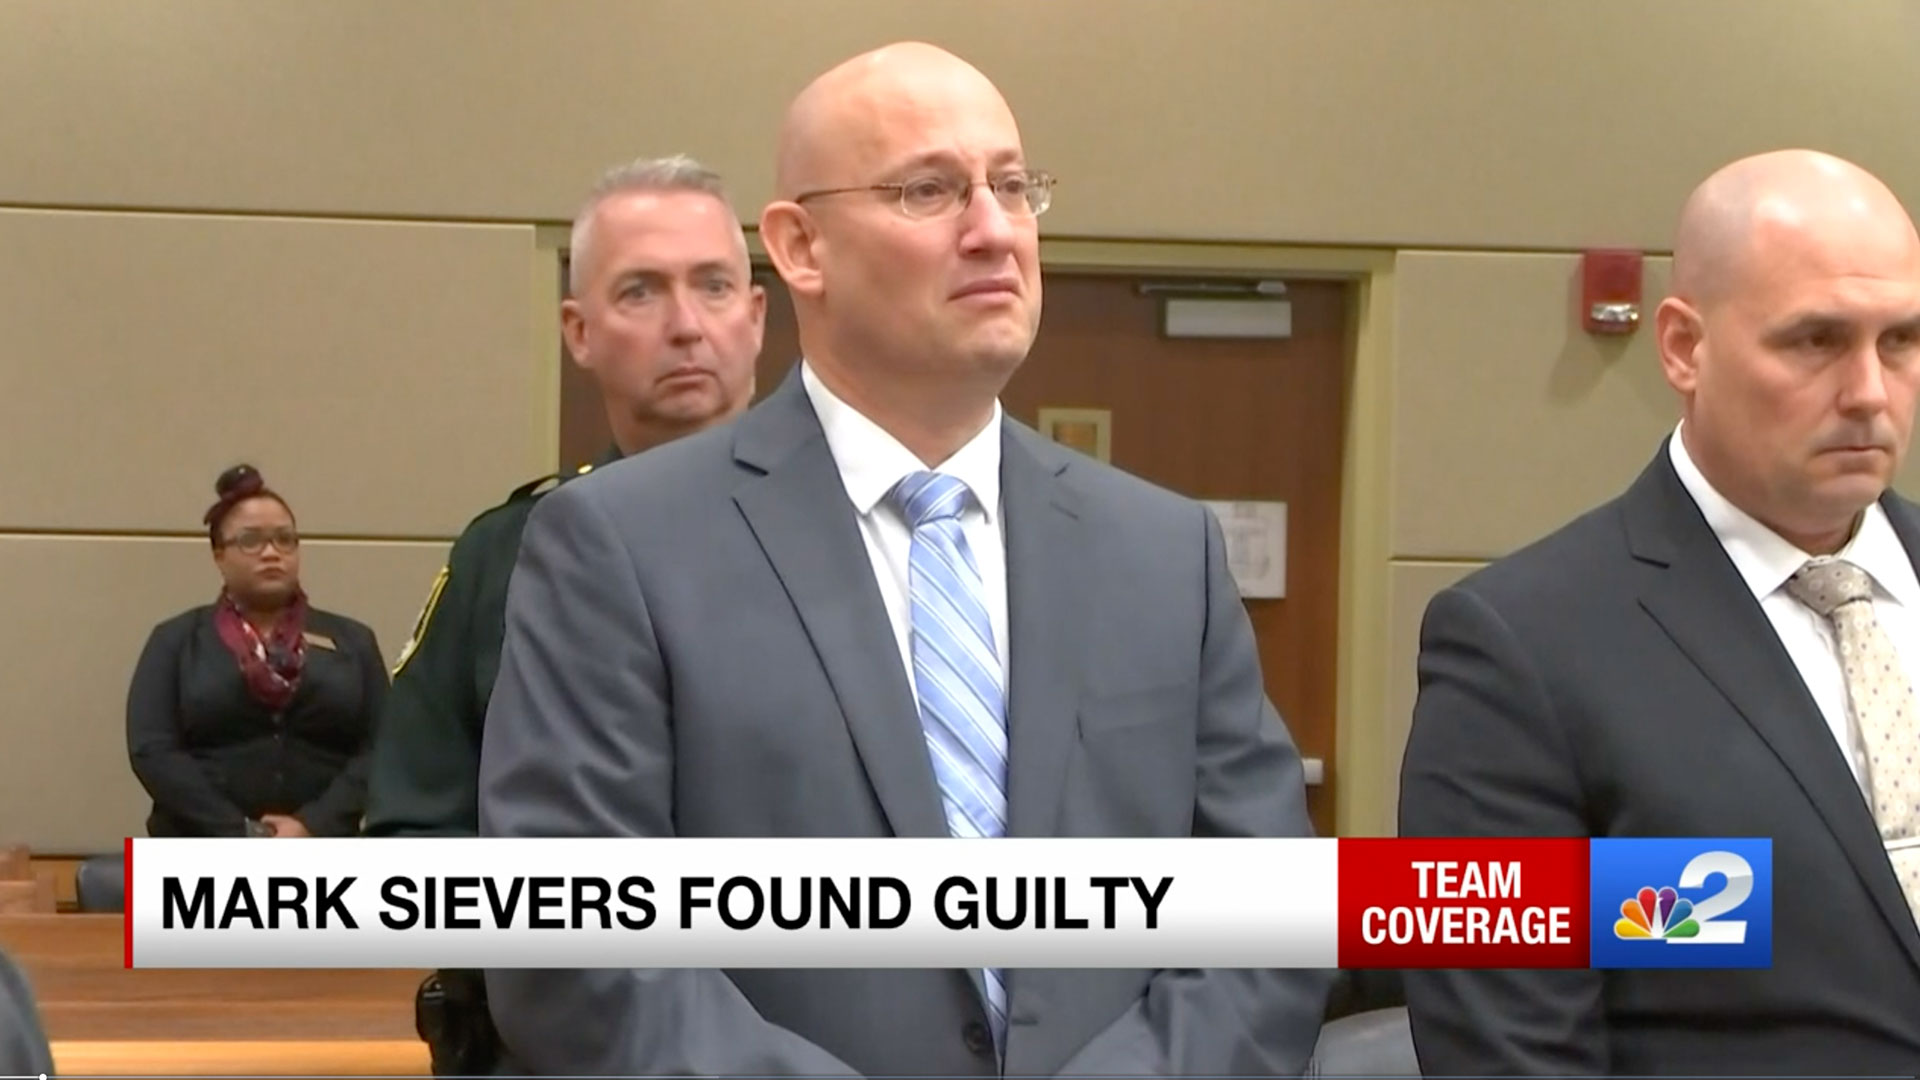 Juez de Florida condena a muerte a un hombre por el brutal asesinato de su esposa